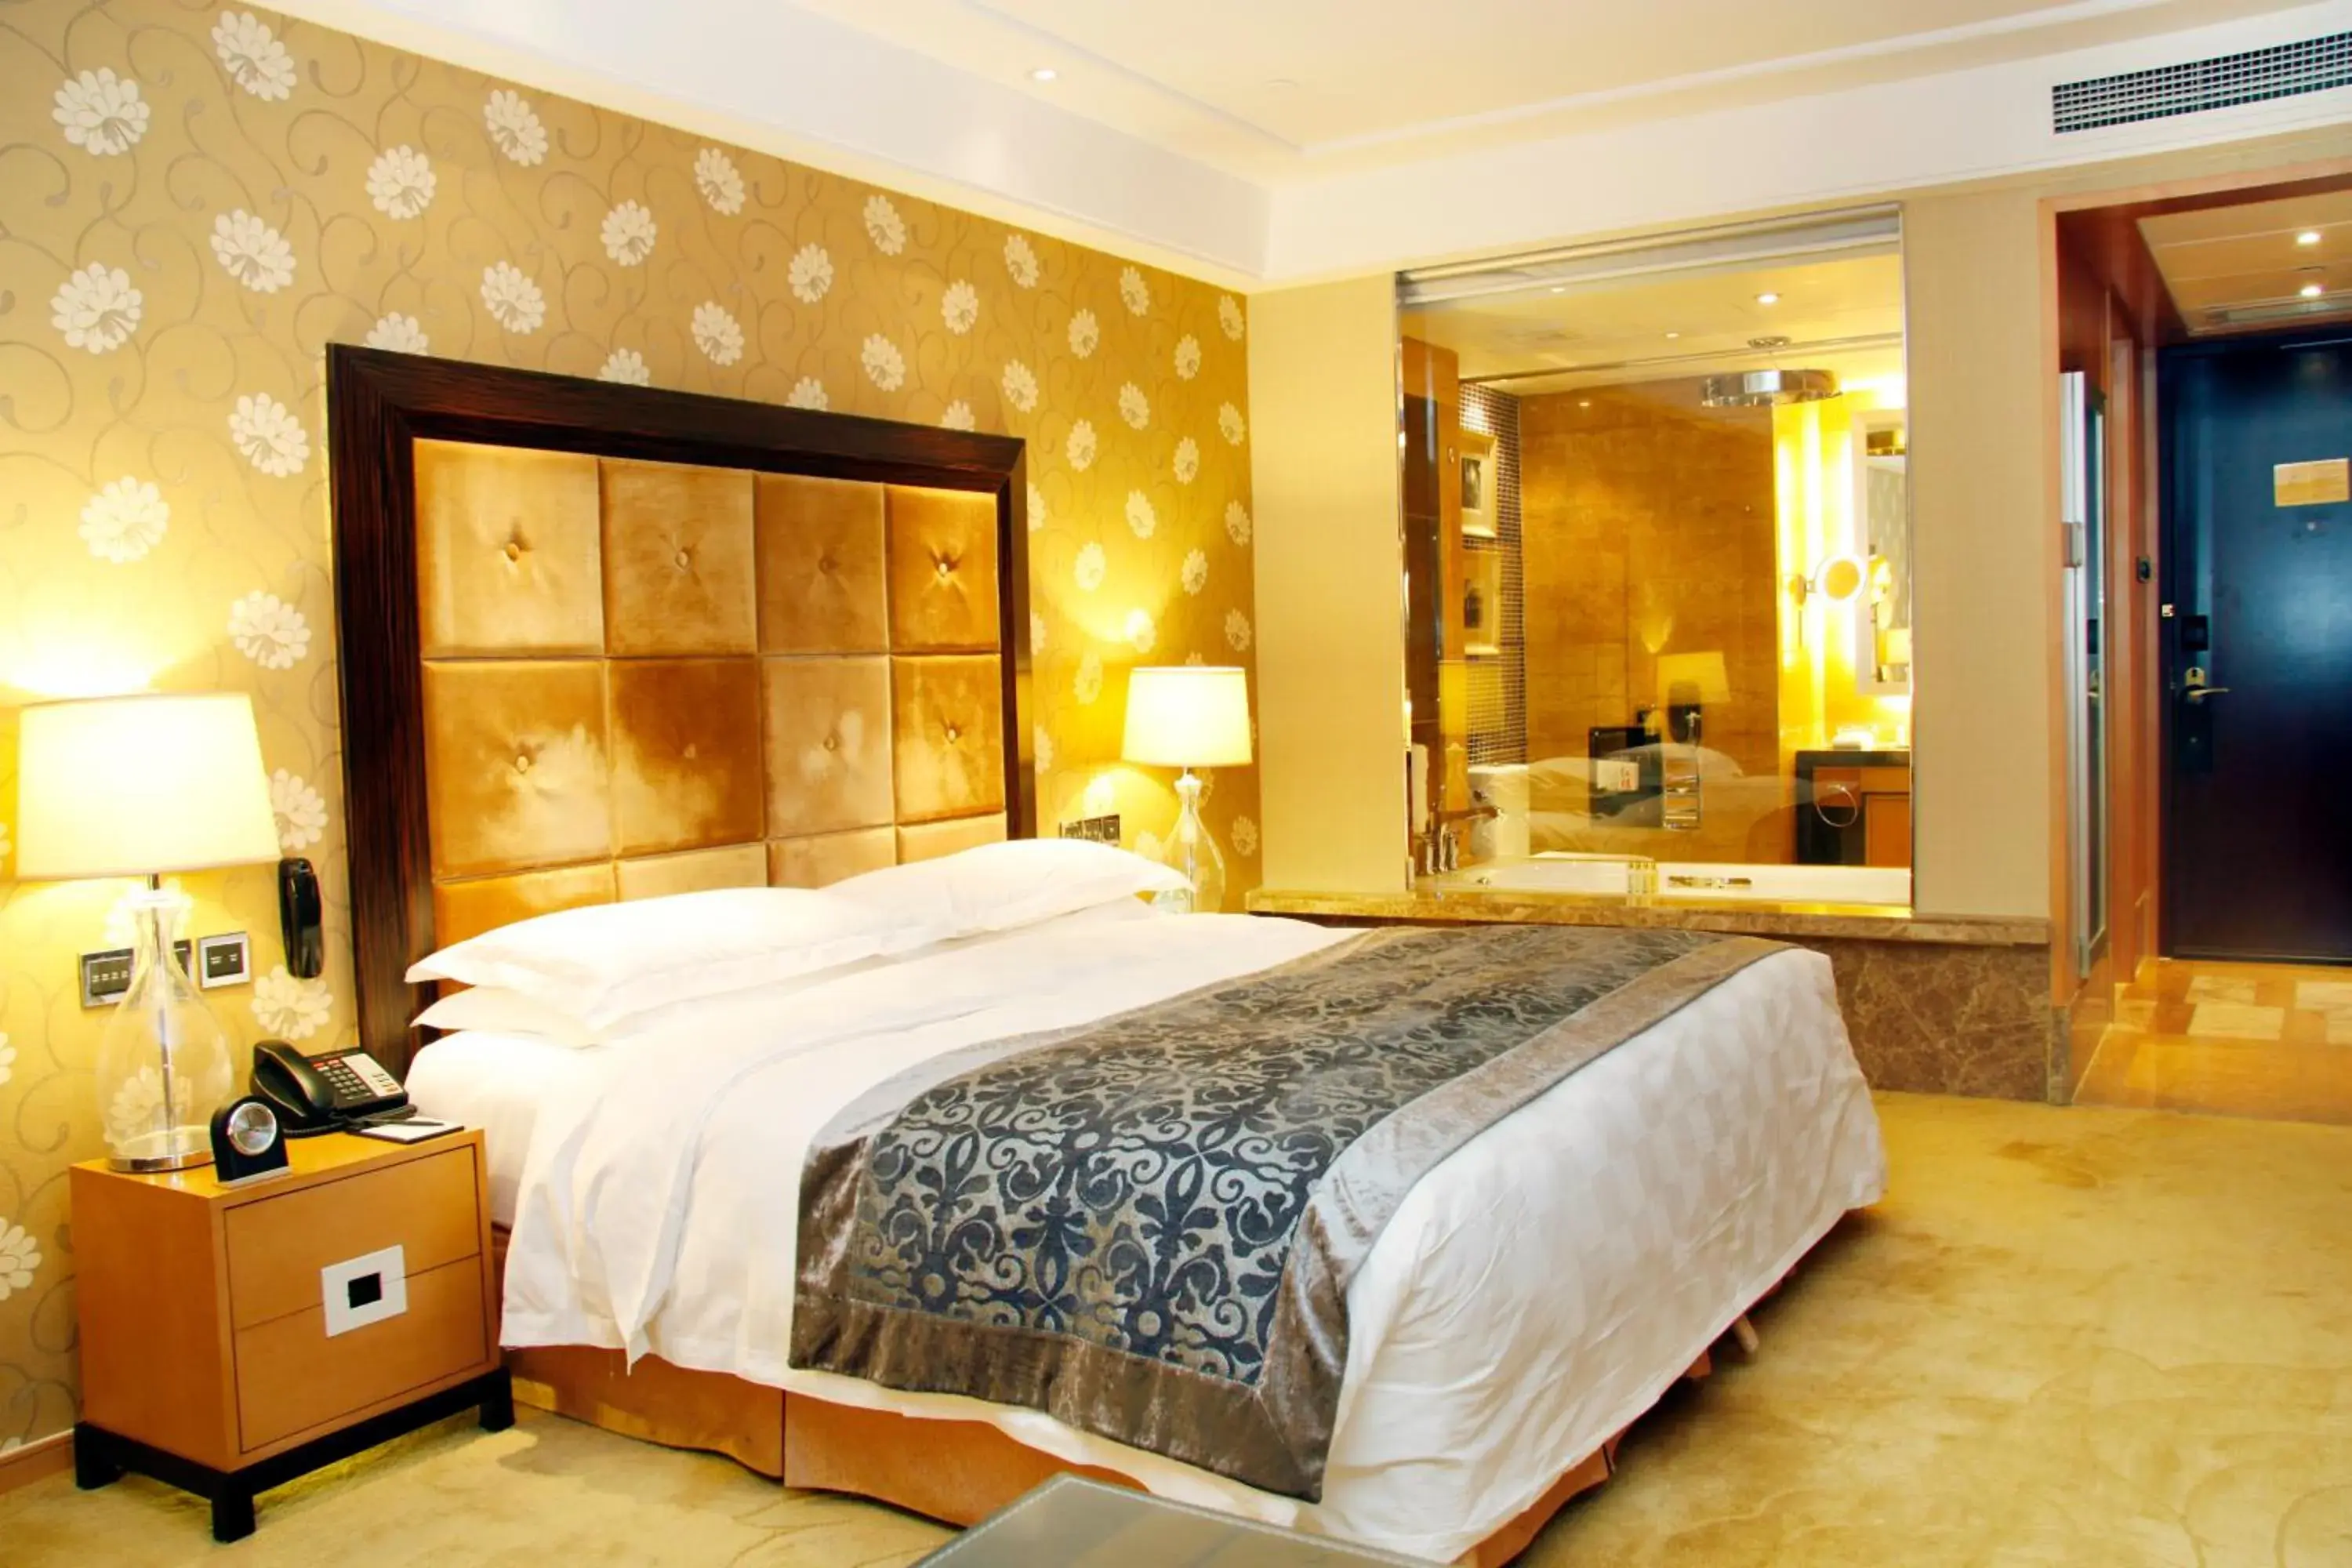 Bed in Radegast Hotel CBD Beijing